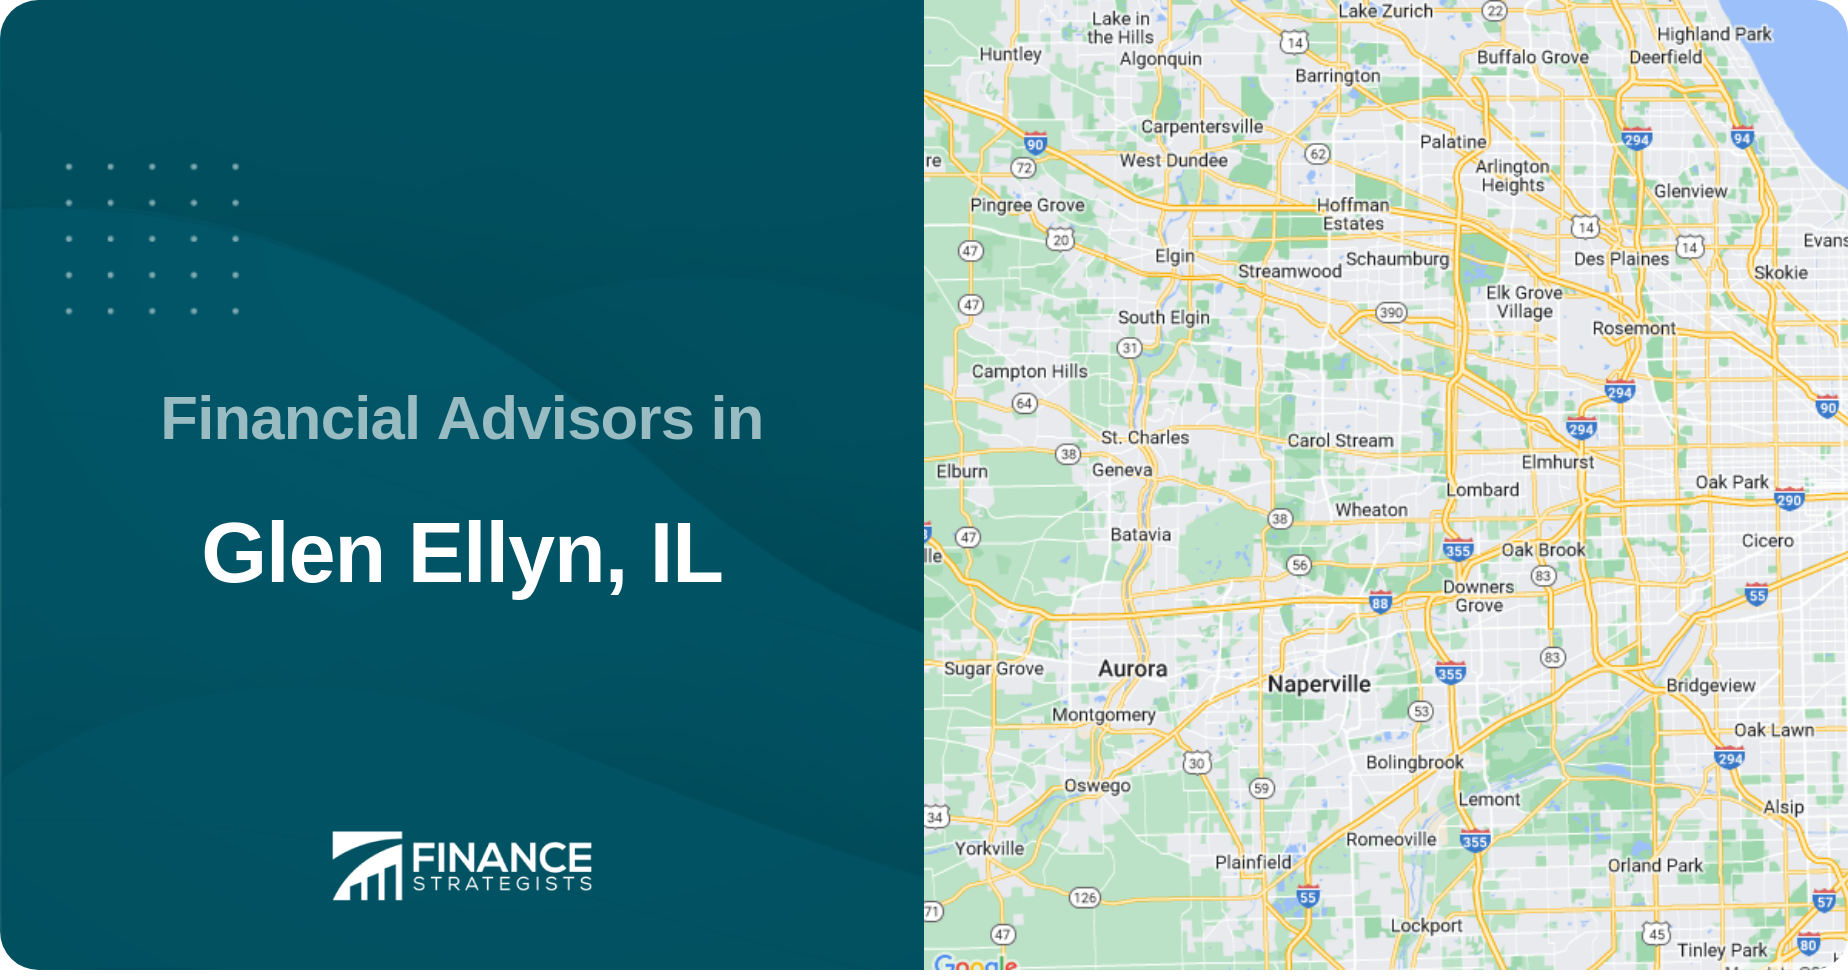 Financial Advisors in Glen Ellyn, IL